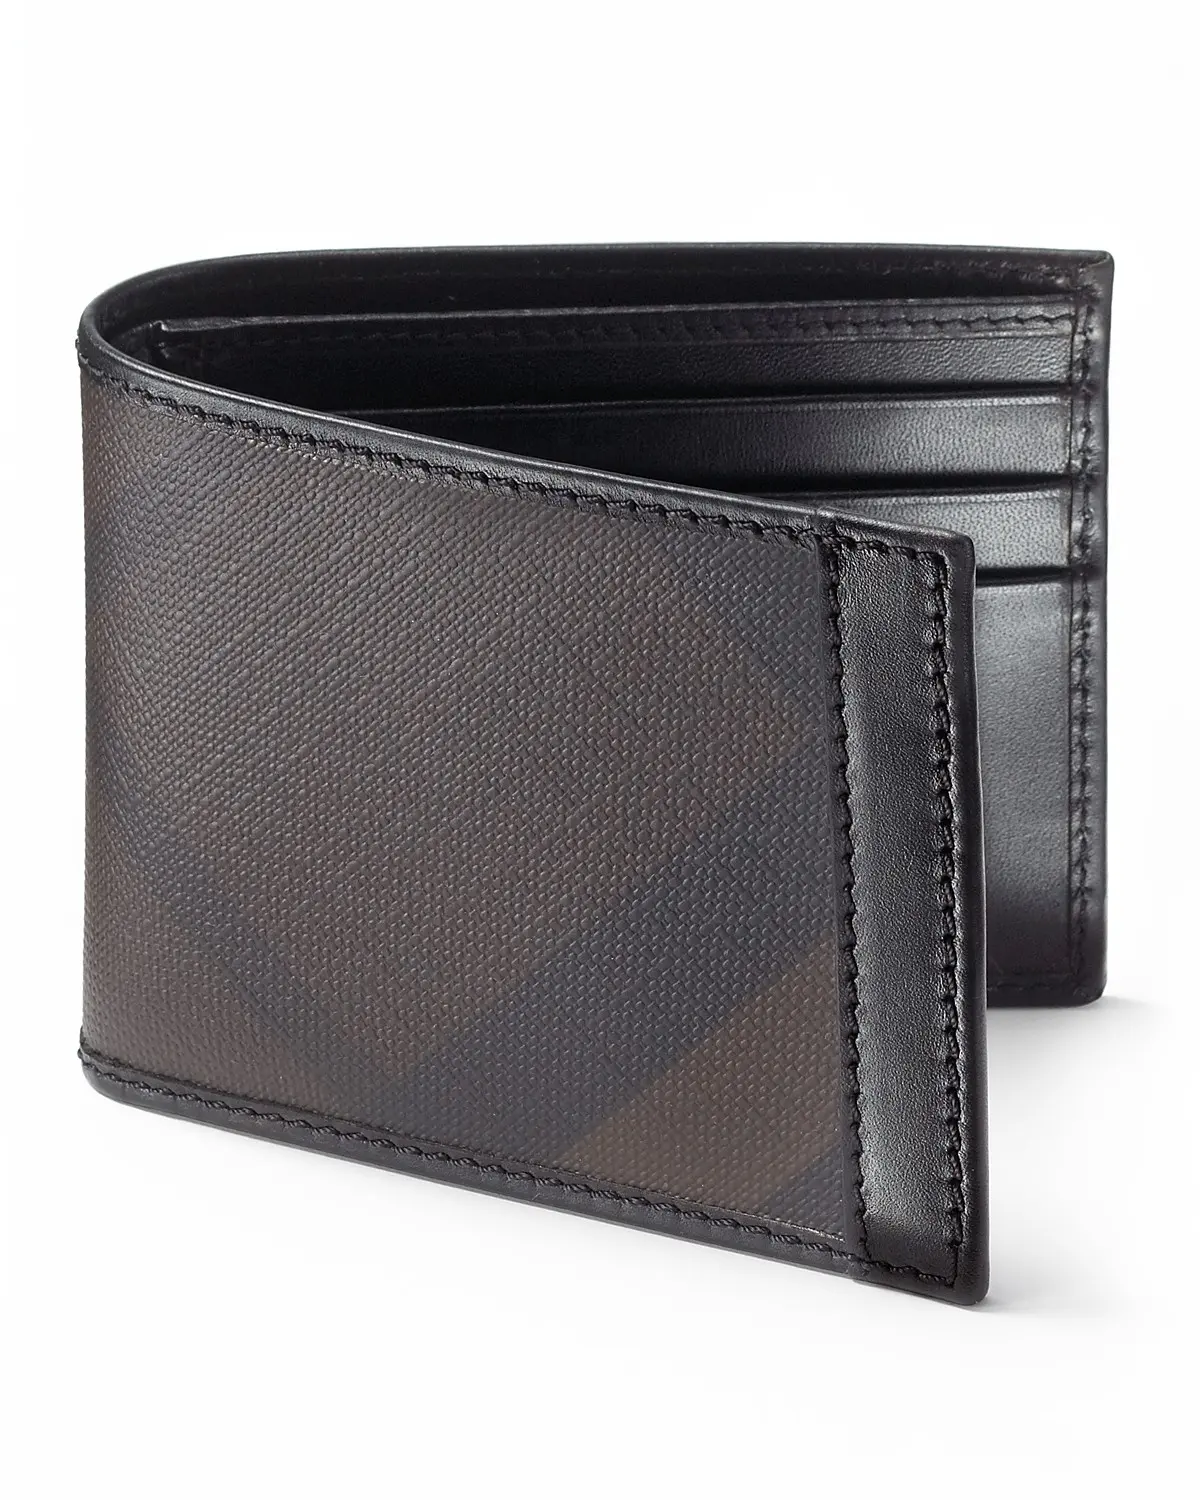 Genuine Leather Slim Wallets For Men Card Case Wallet For Men Smart Wallet For Men